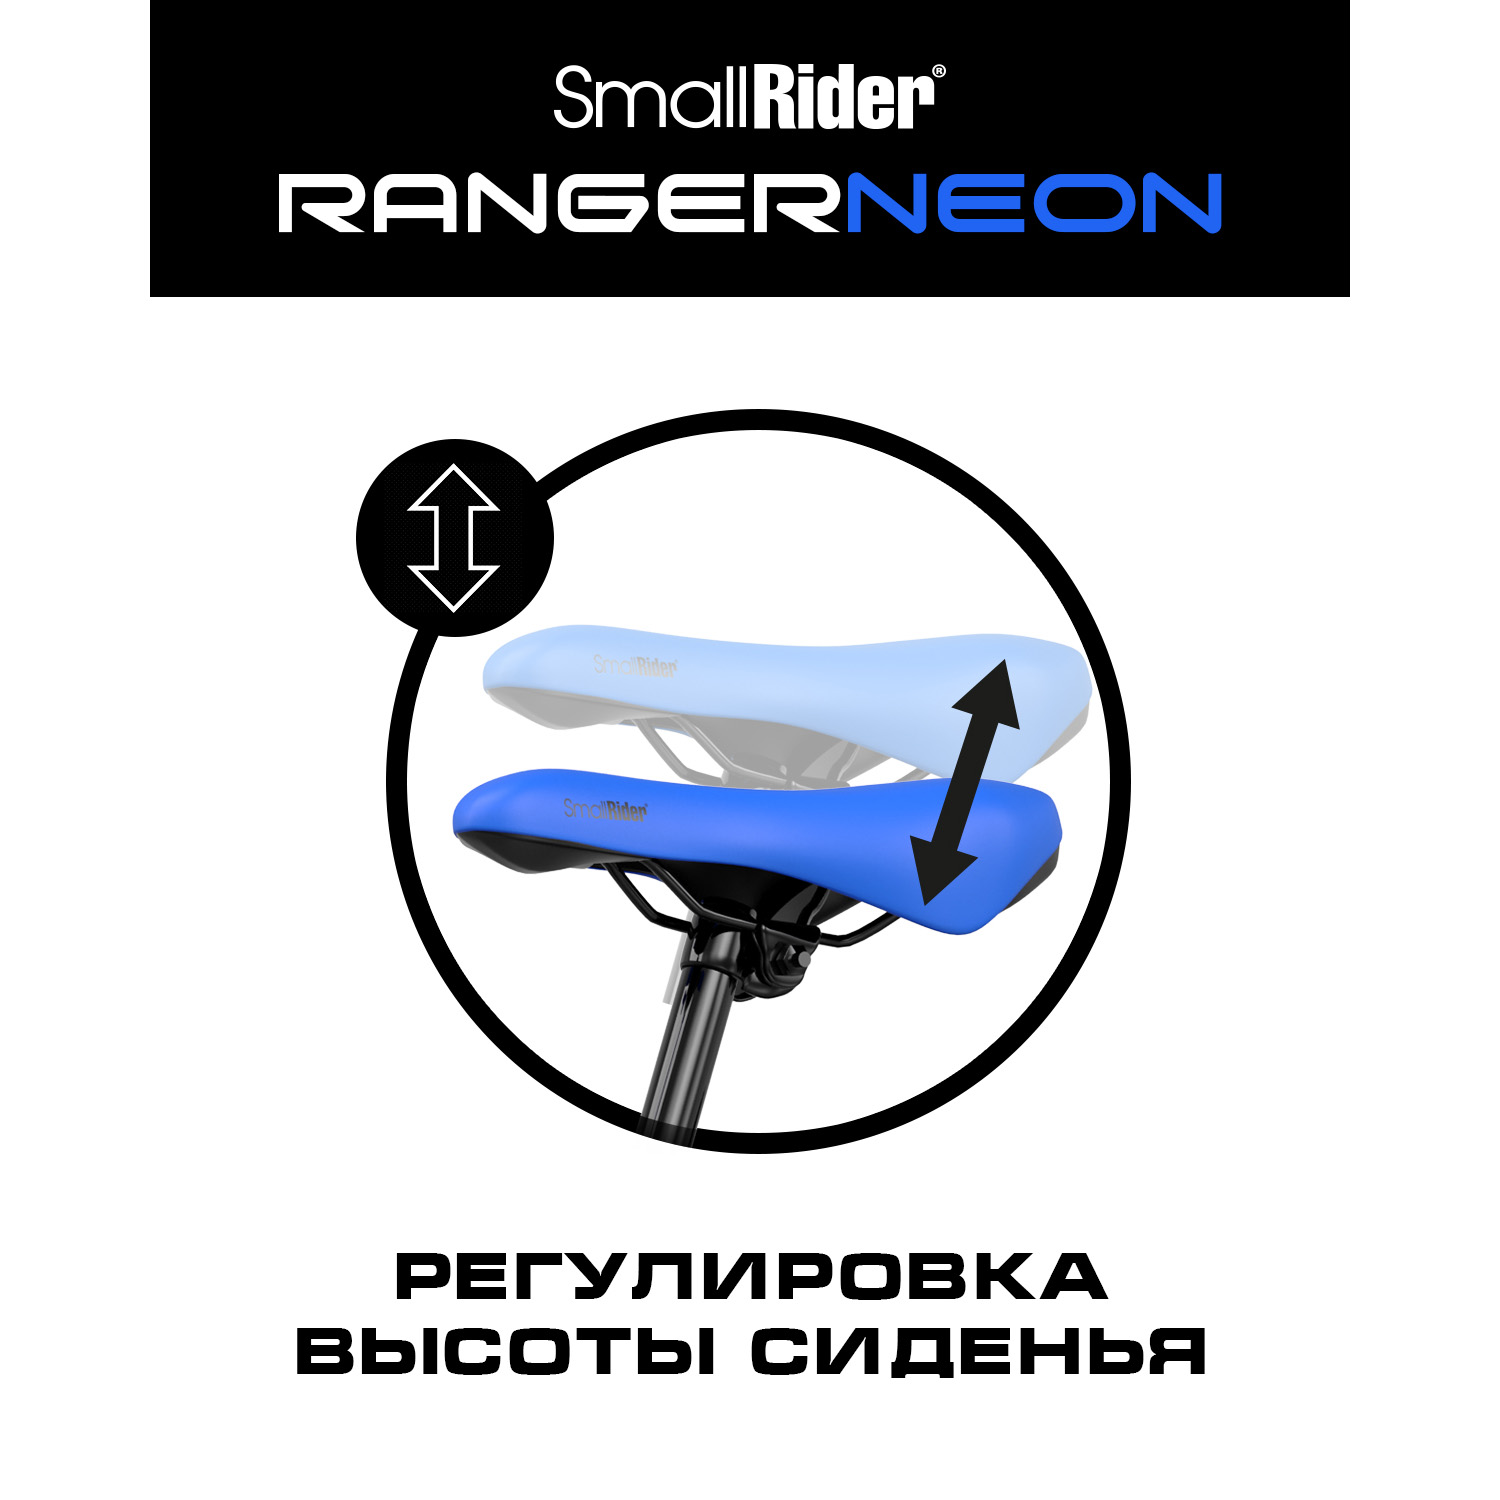 Беговел Small Rider Ranger 3 Neon R синий - фото 6